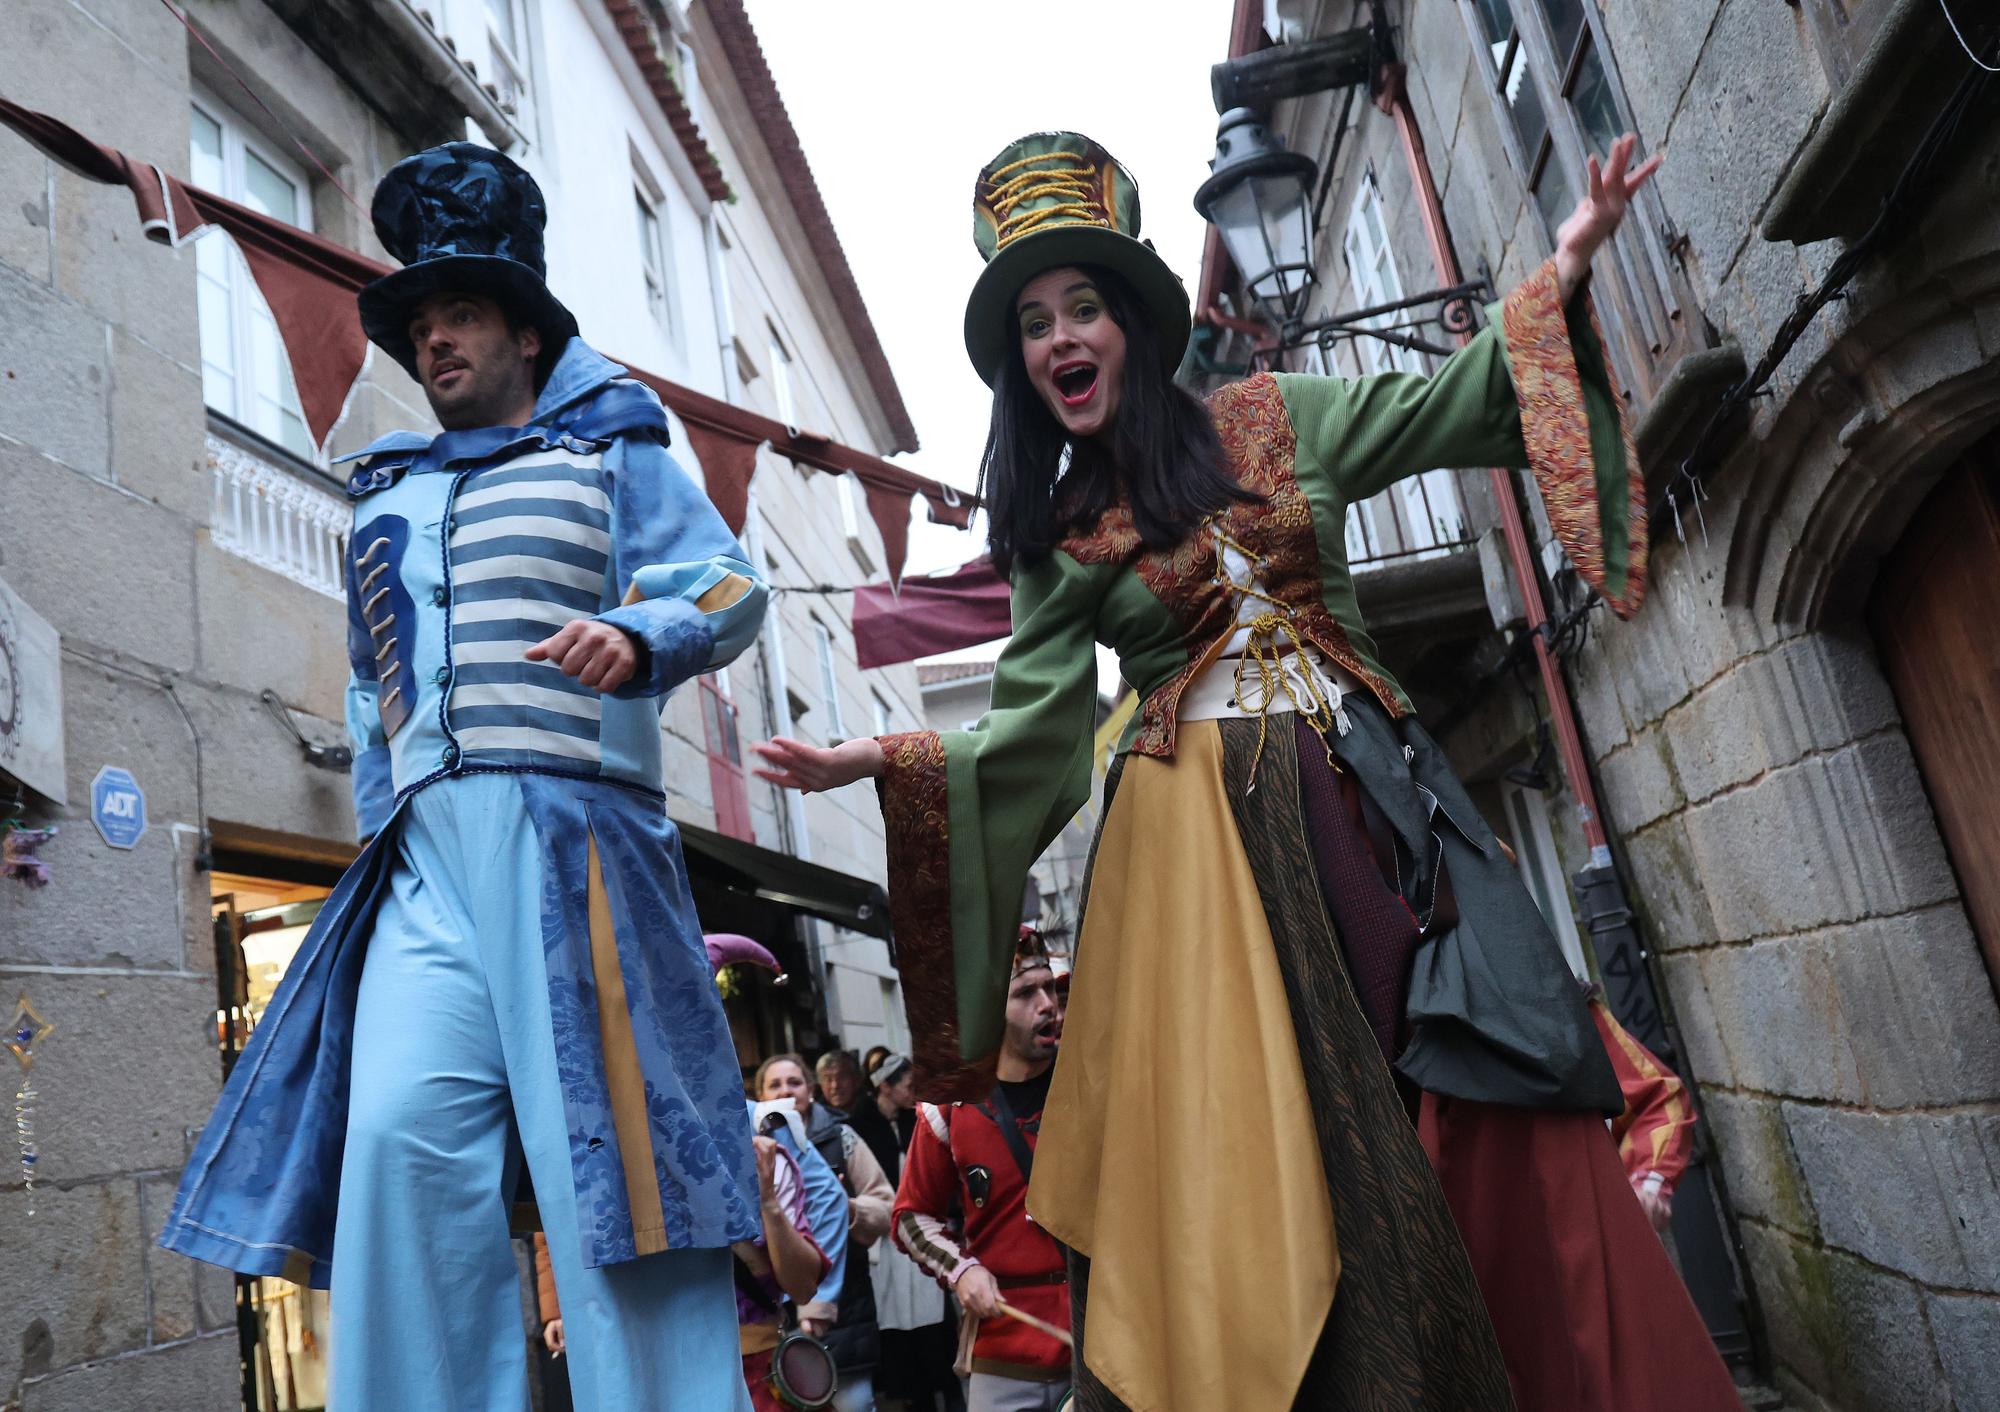 La representación teatral triunfó pese a la lluvia para luego trasladar el ambientazo de fiesta a las calles del casco histórico